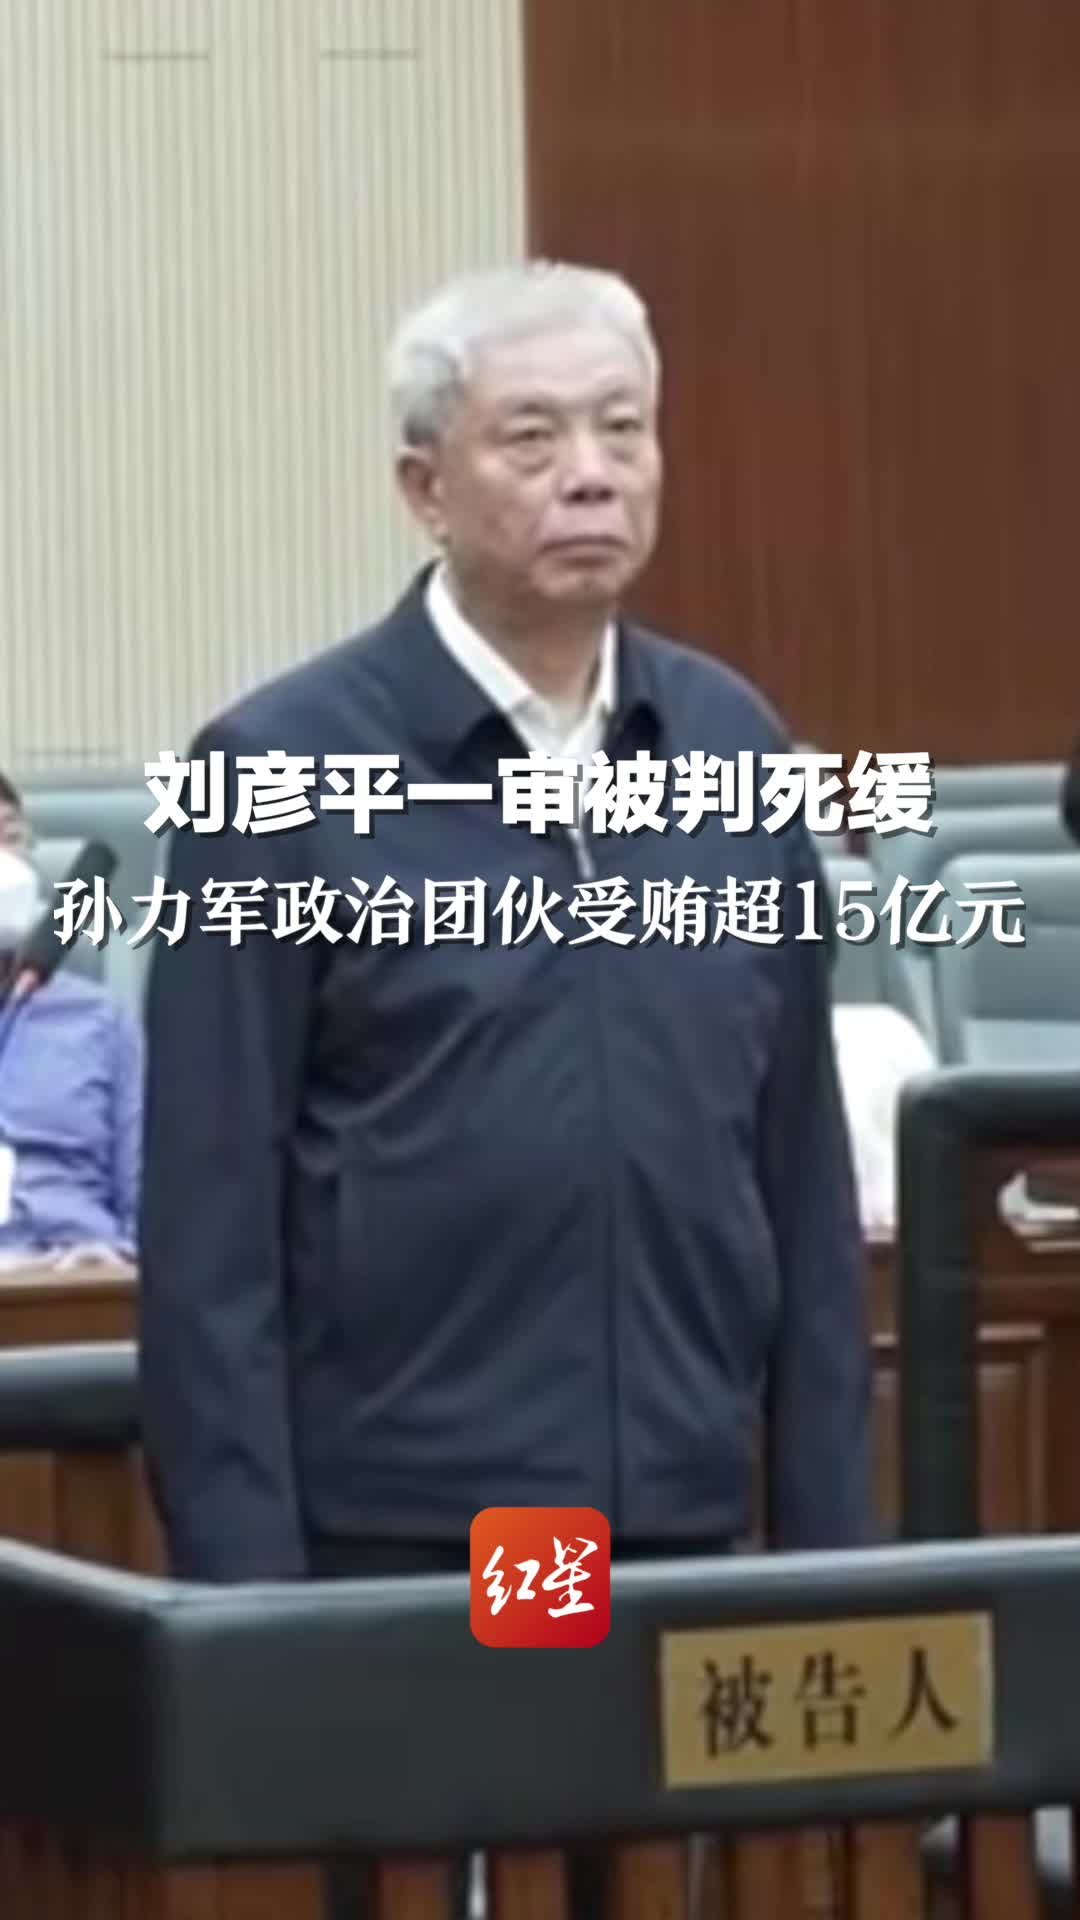 刘彦平一审被判死缓，孙力军政治团伙受贿超15亿元